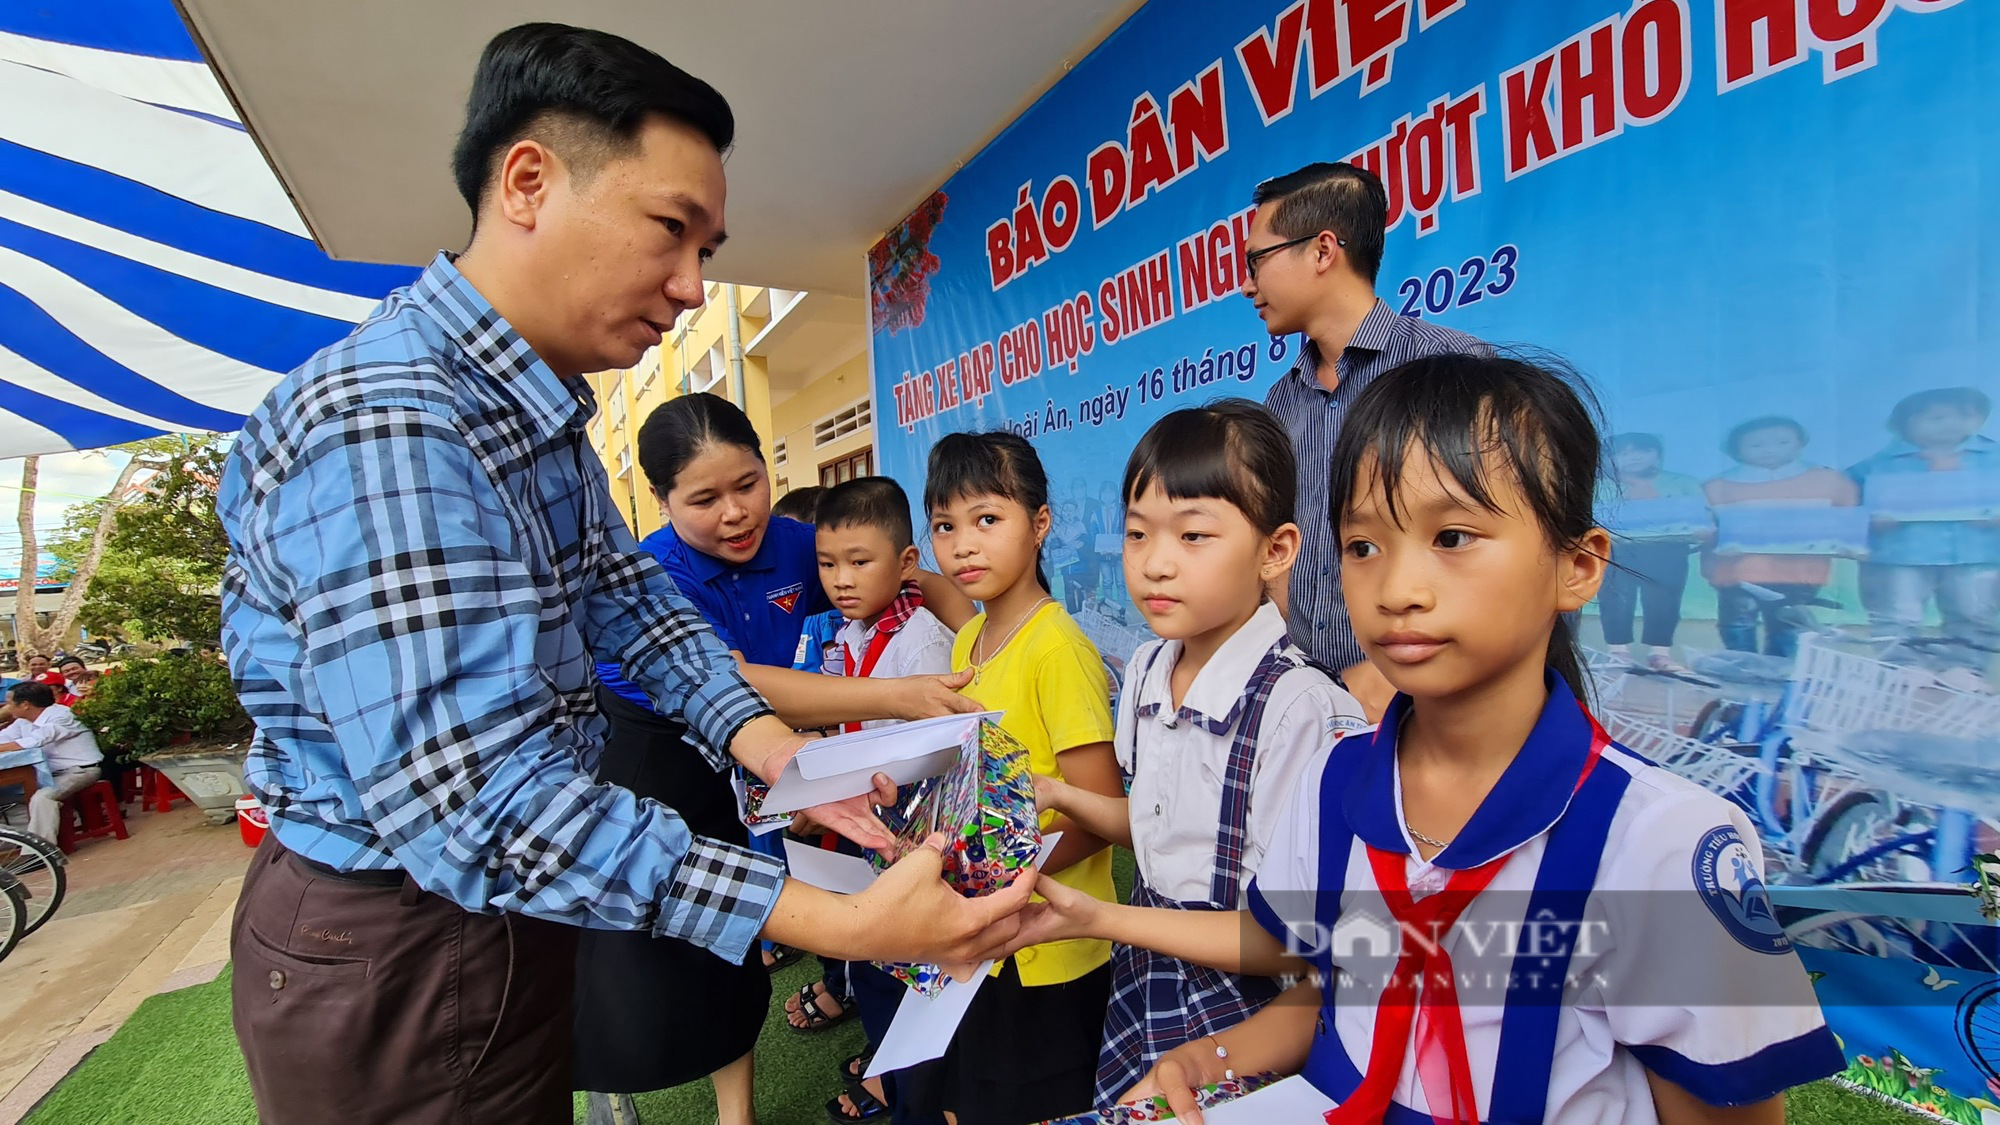 Báo Dân Việt trao học bổng, xe đạp cho học sinh nghèo vượt khó tại Bình Định - Ảnh 1.